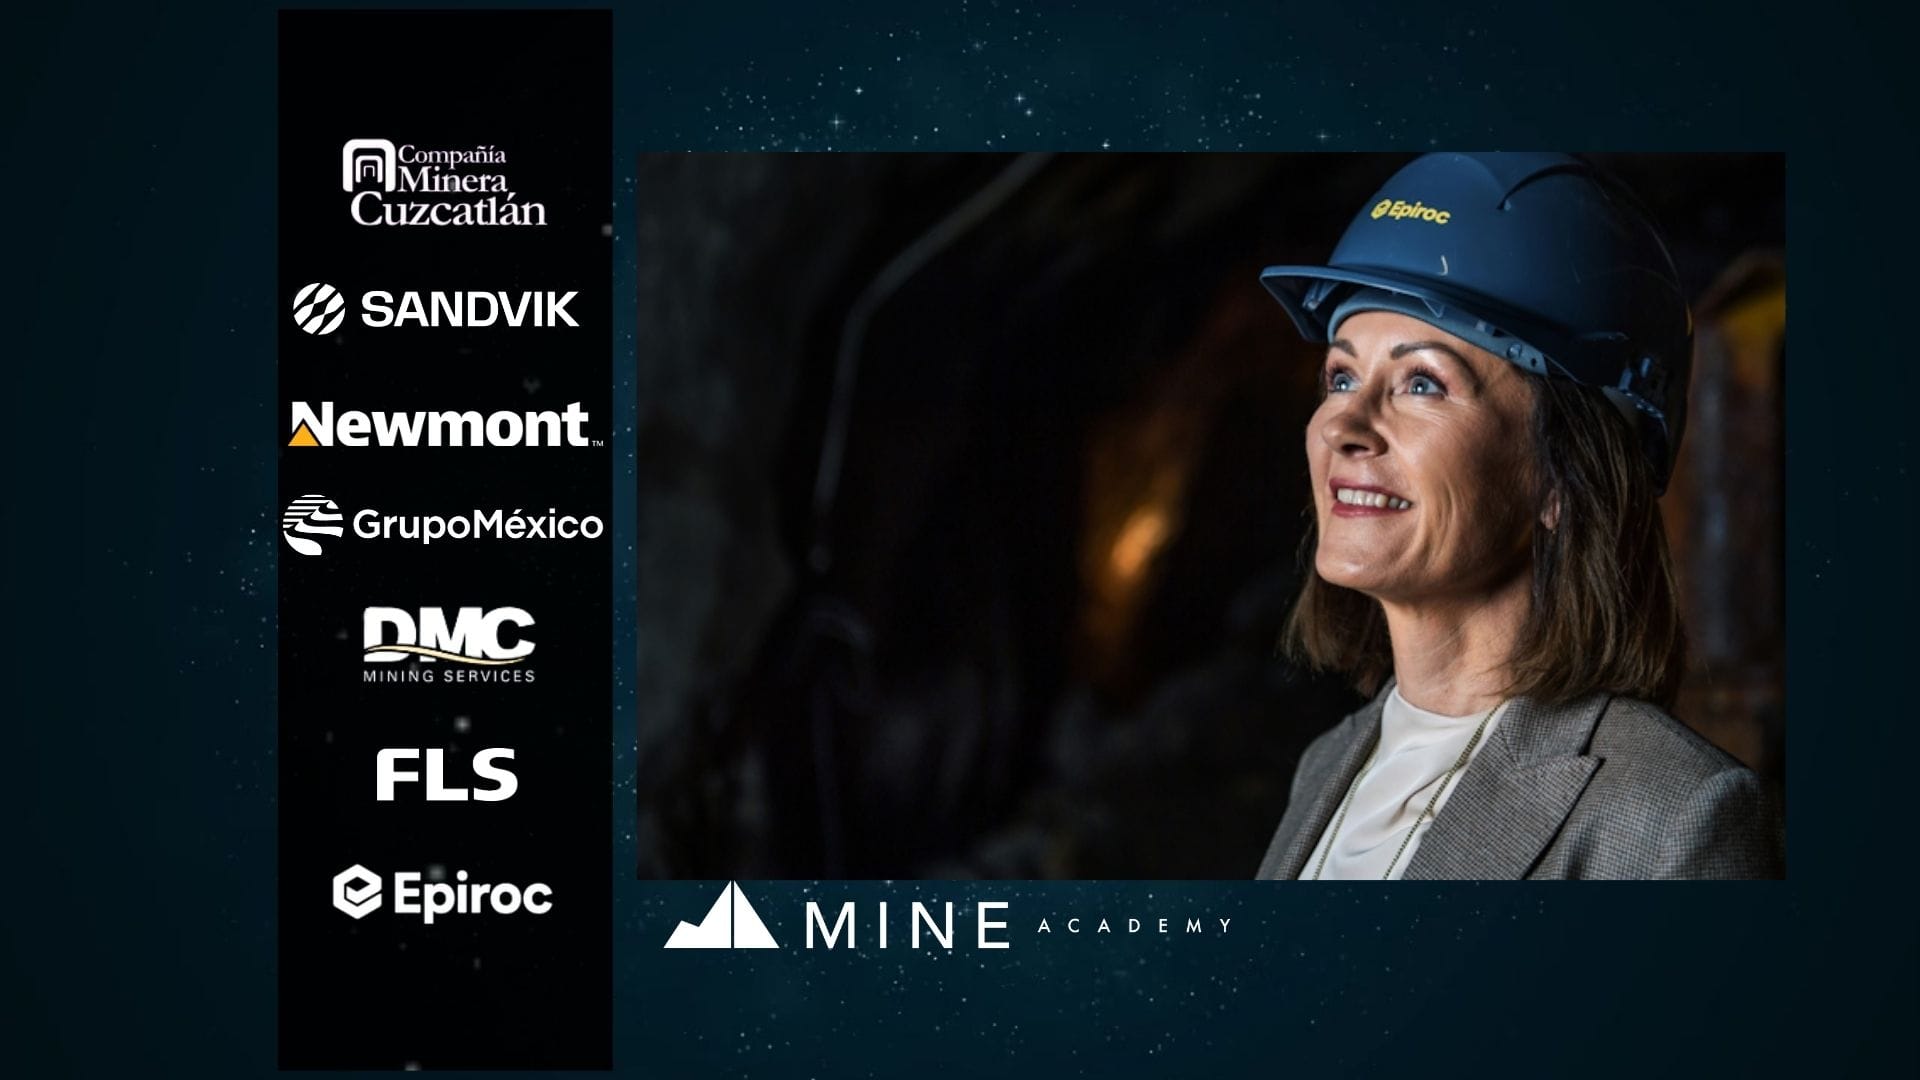 Noticias mineras del 24 de julio y cápsula, presentadas por Minera Cuzcatlán